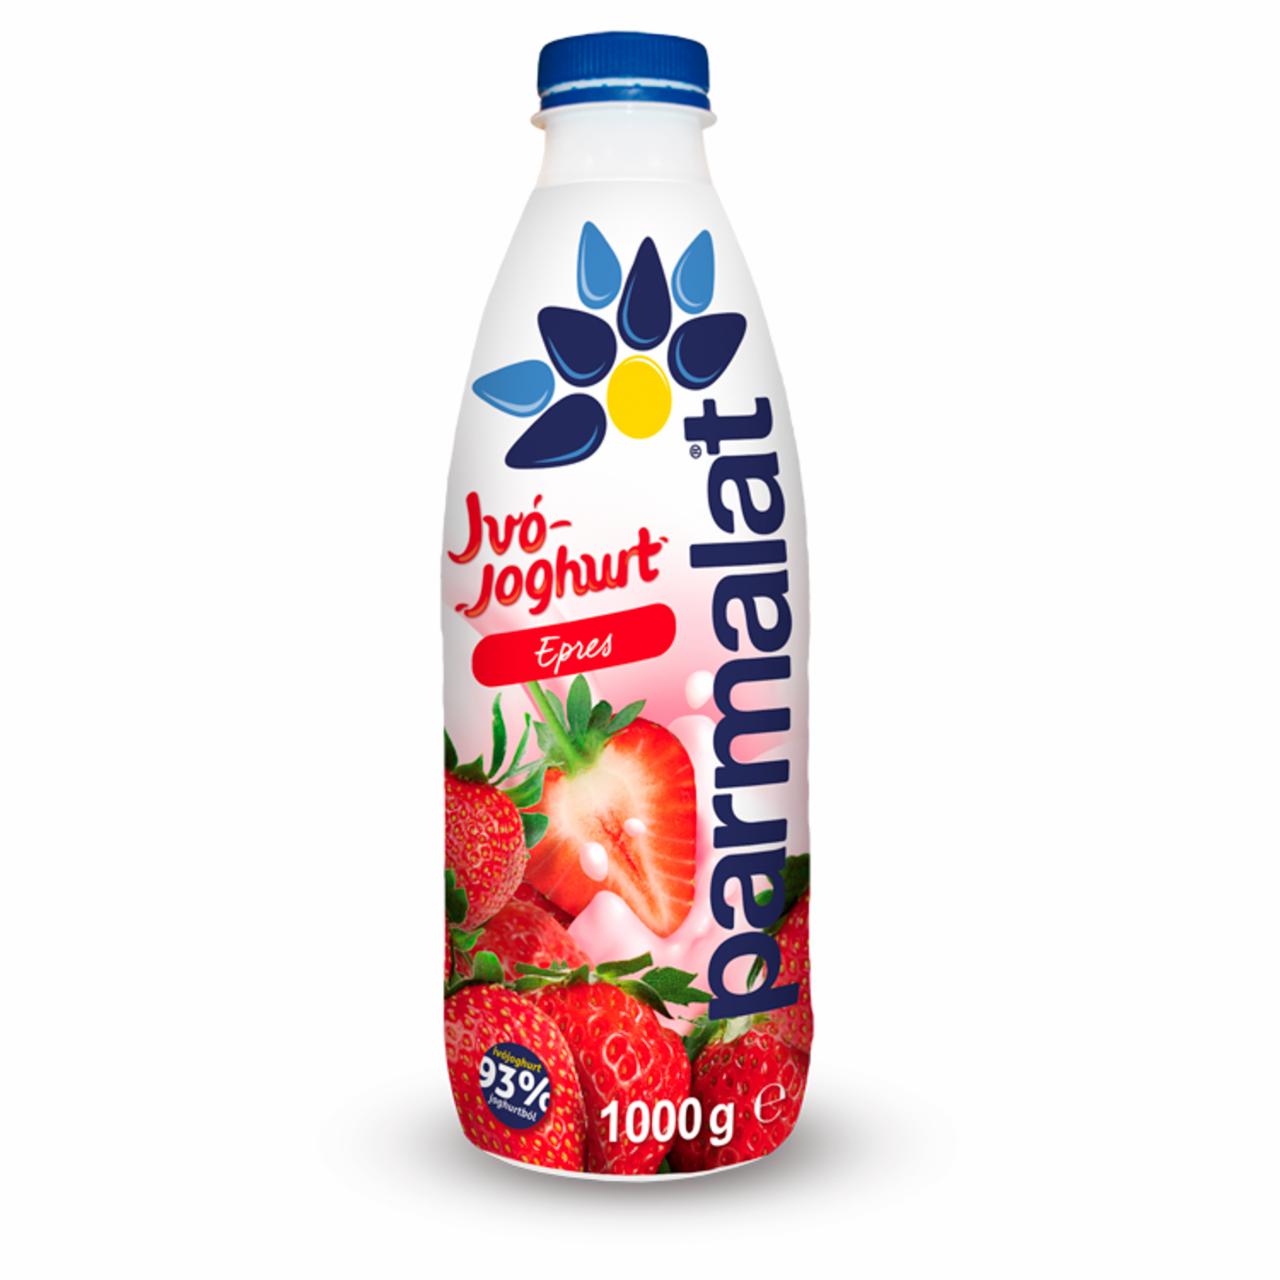 Képek - Parmalat zsírszegény epres ivójoghurt 1000 g